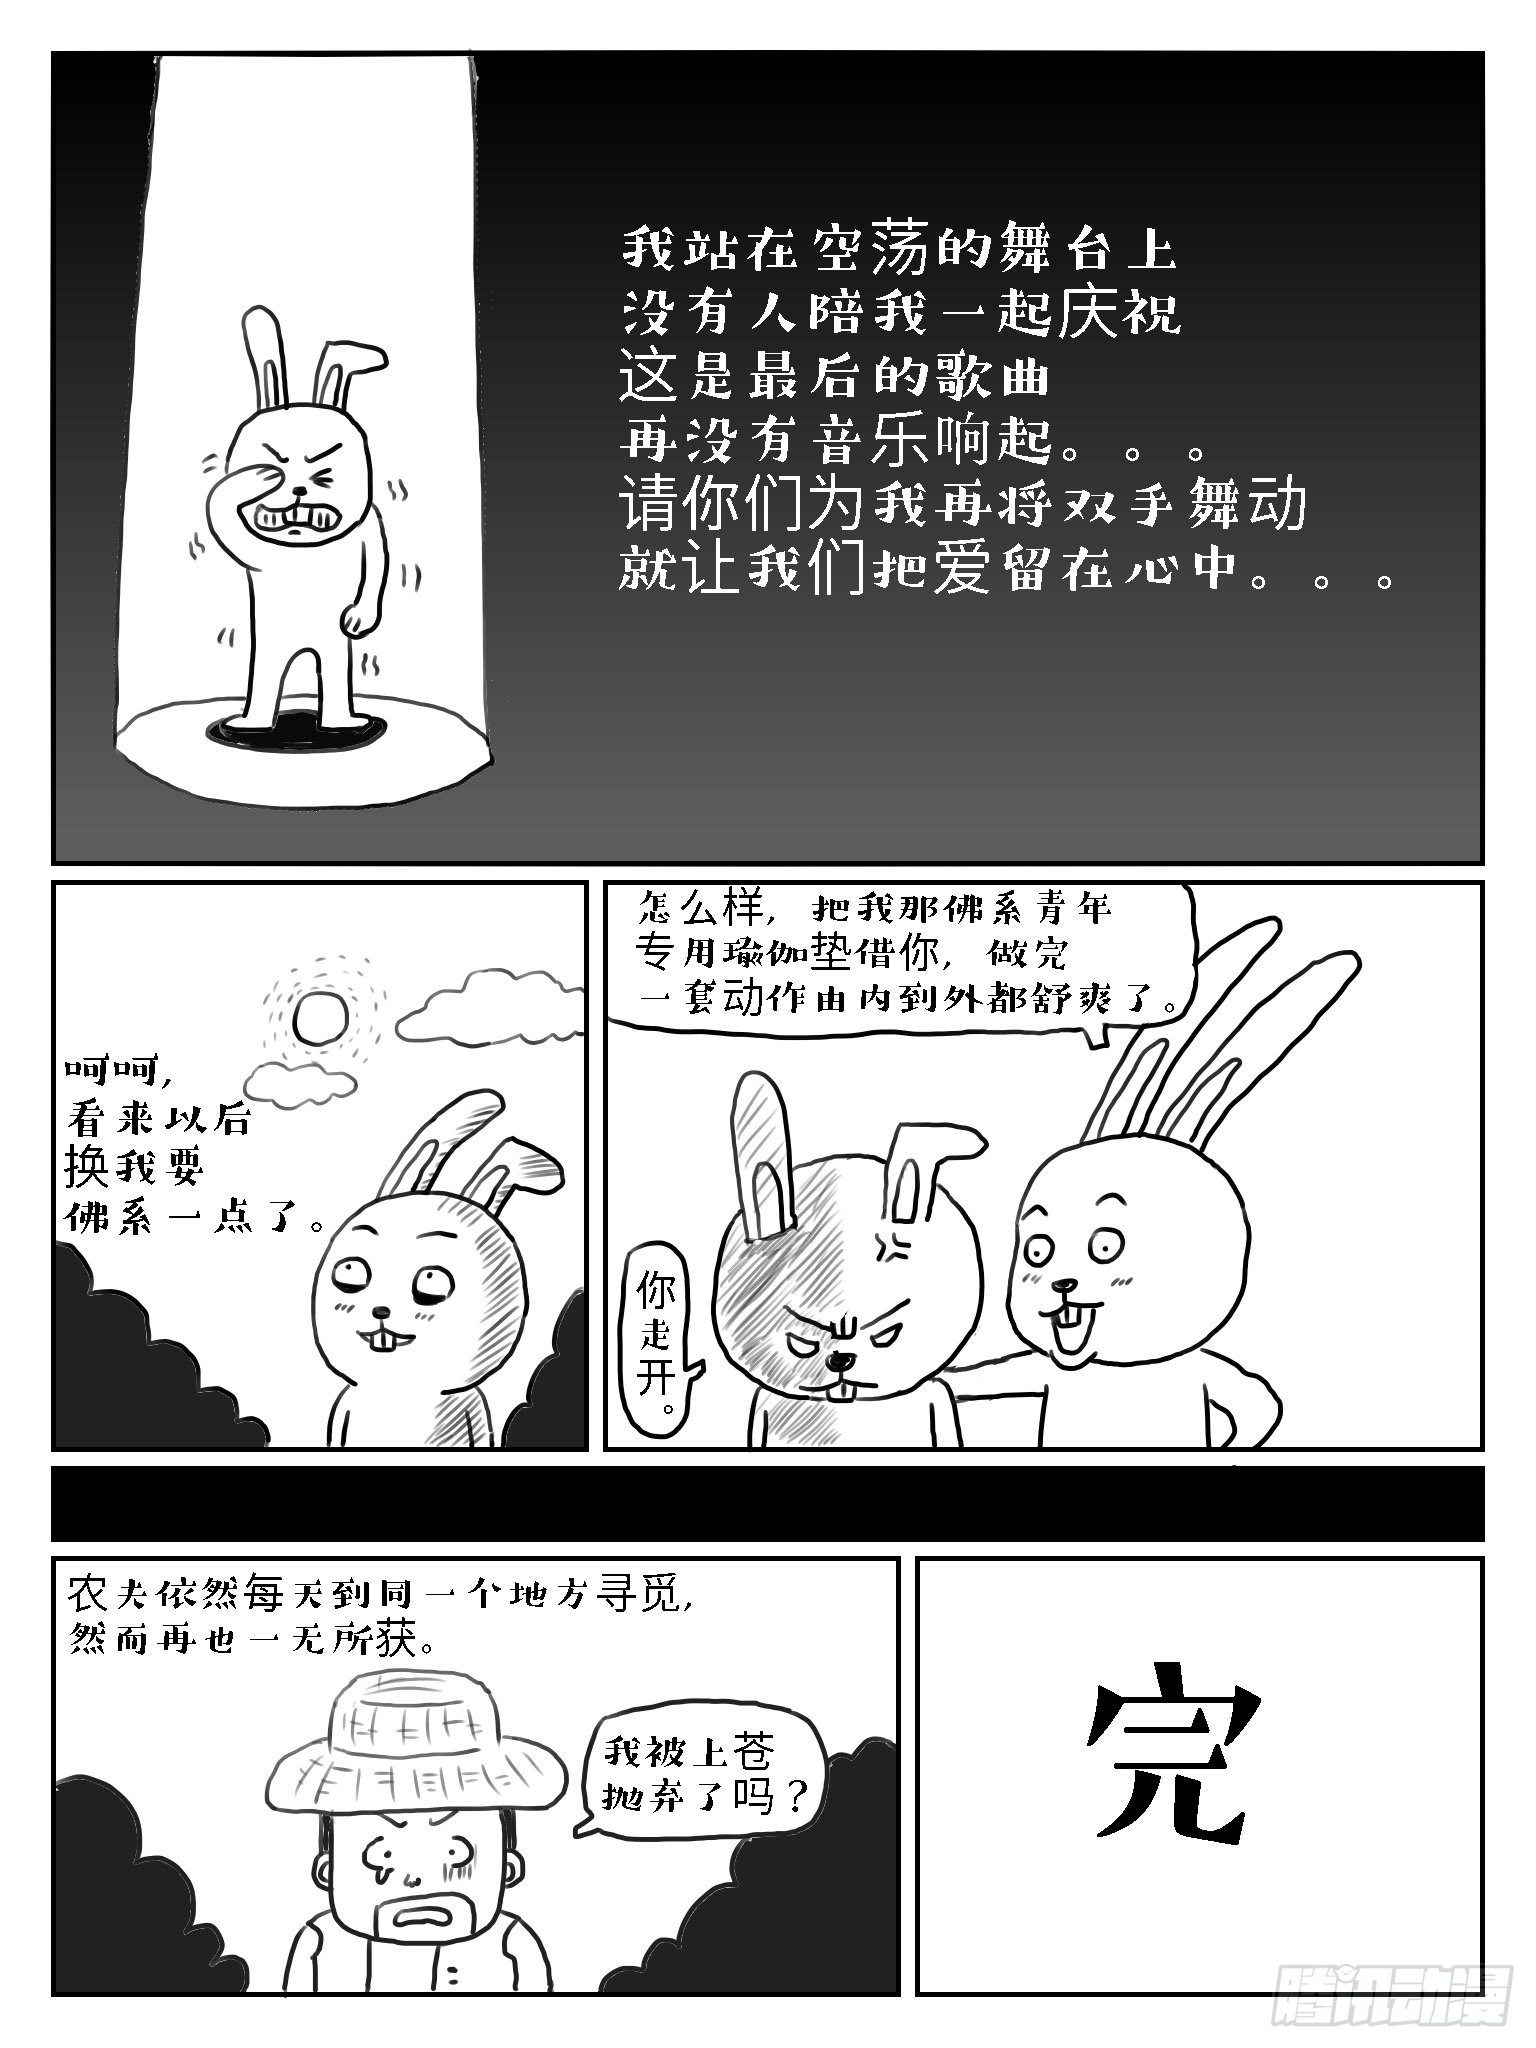 成语故事 - 守株待兔 - 2